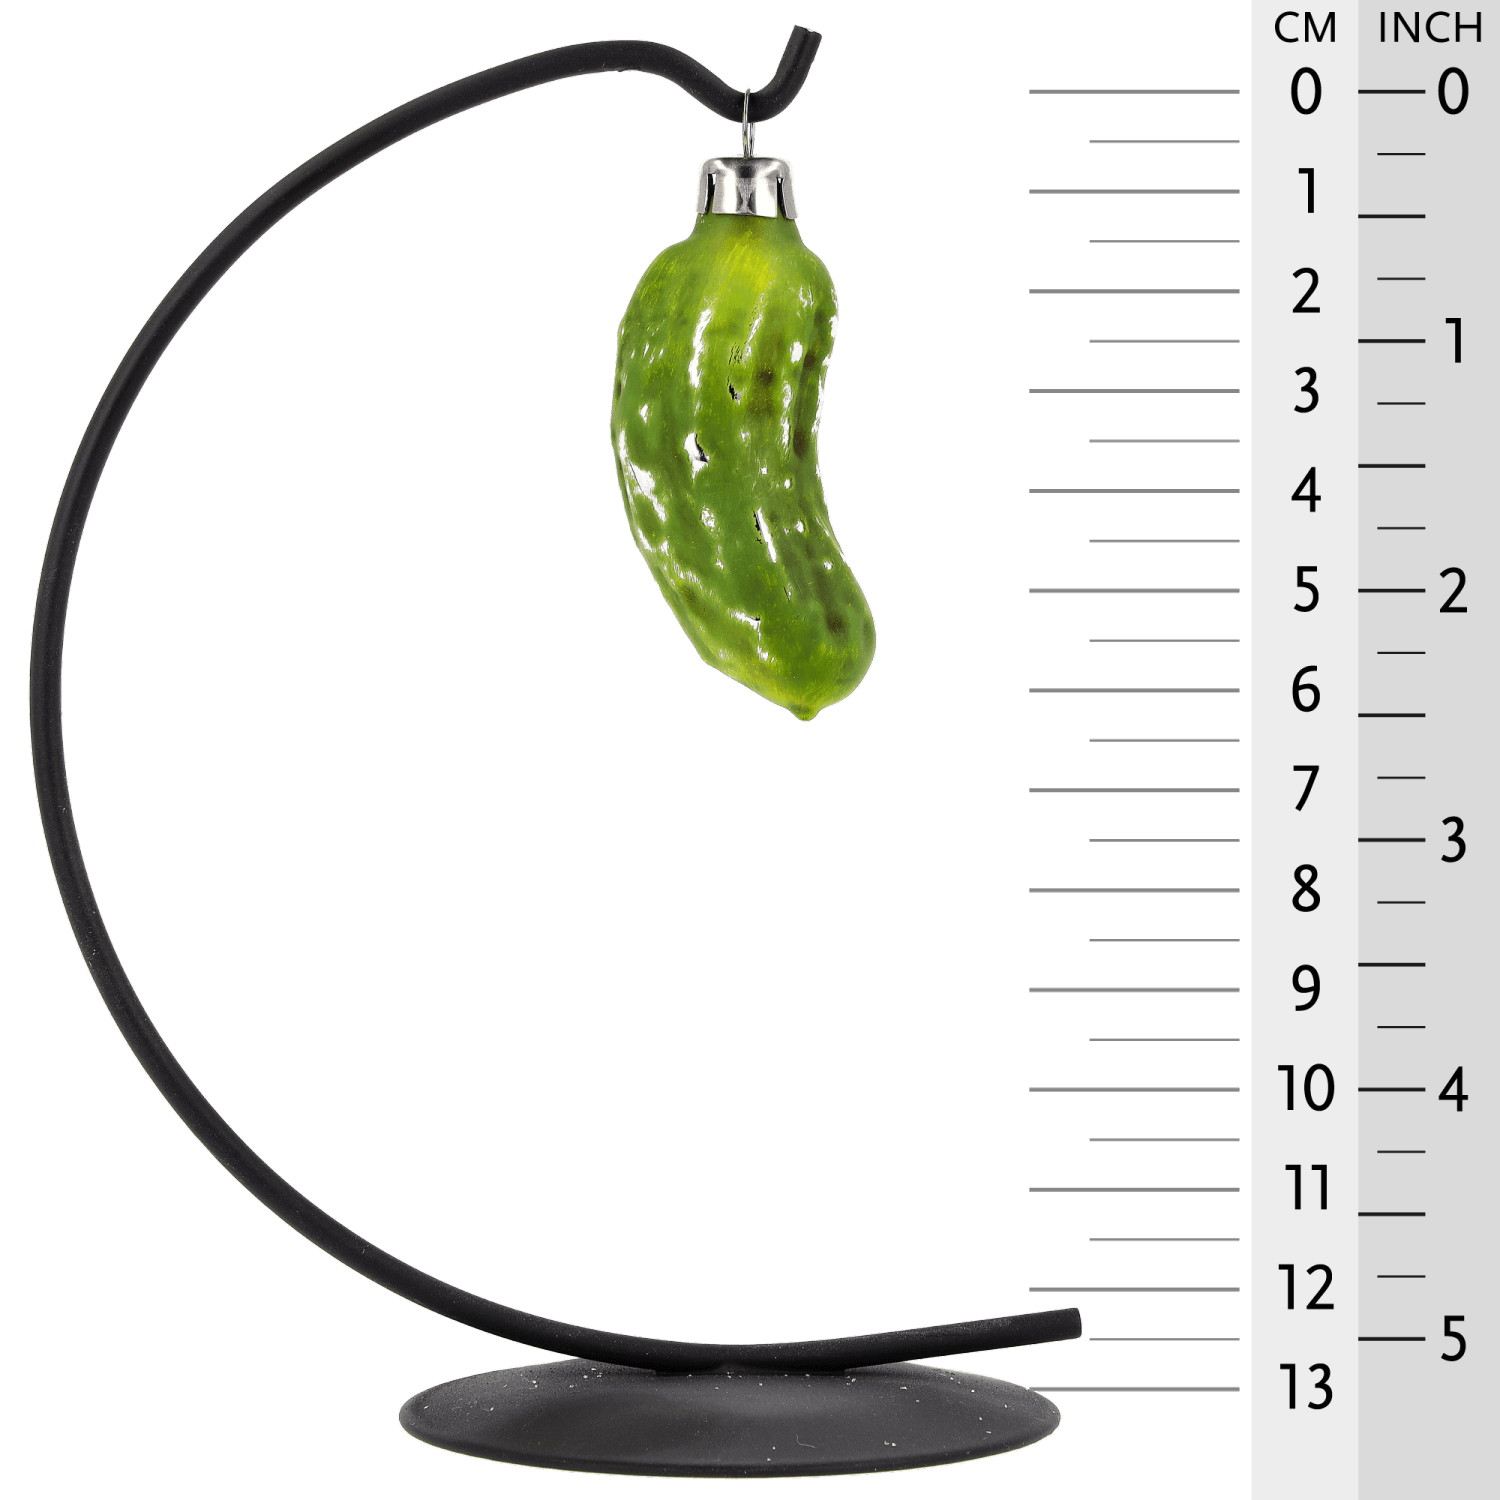 MAROLIN® - Glass ornament "Small pickle"